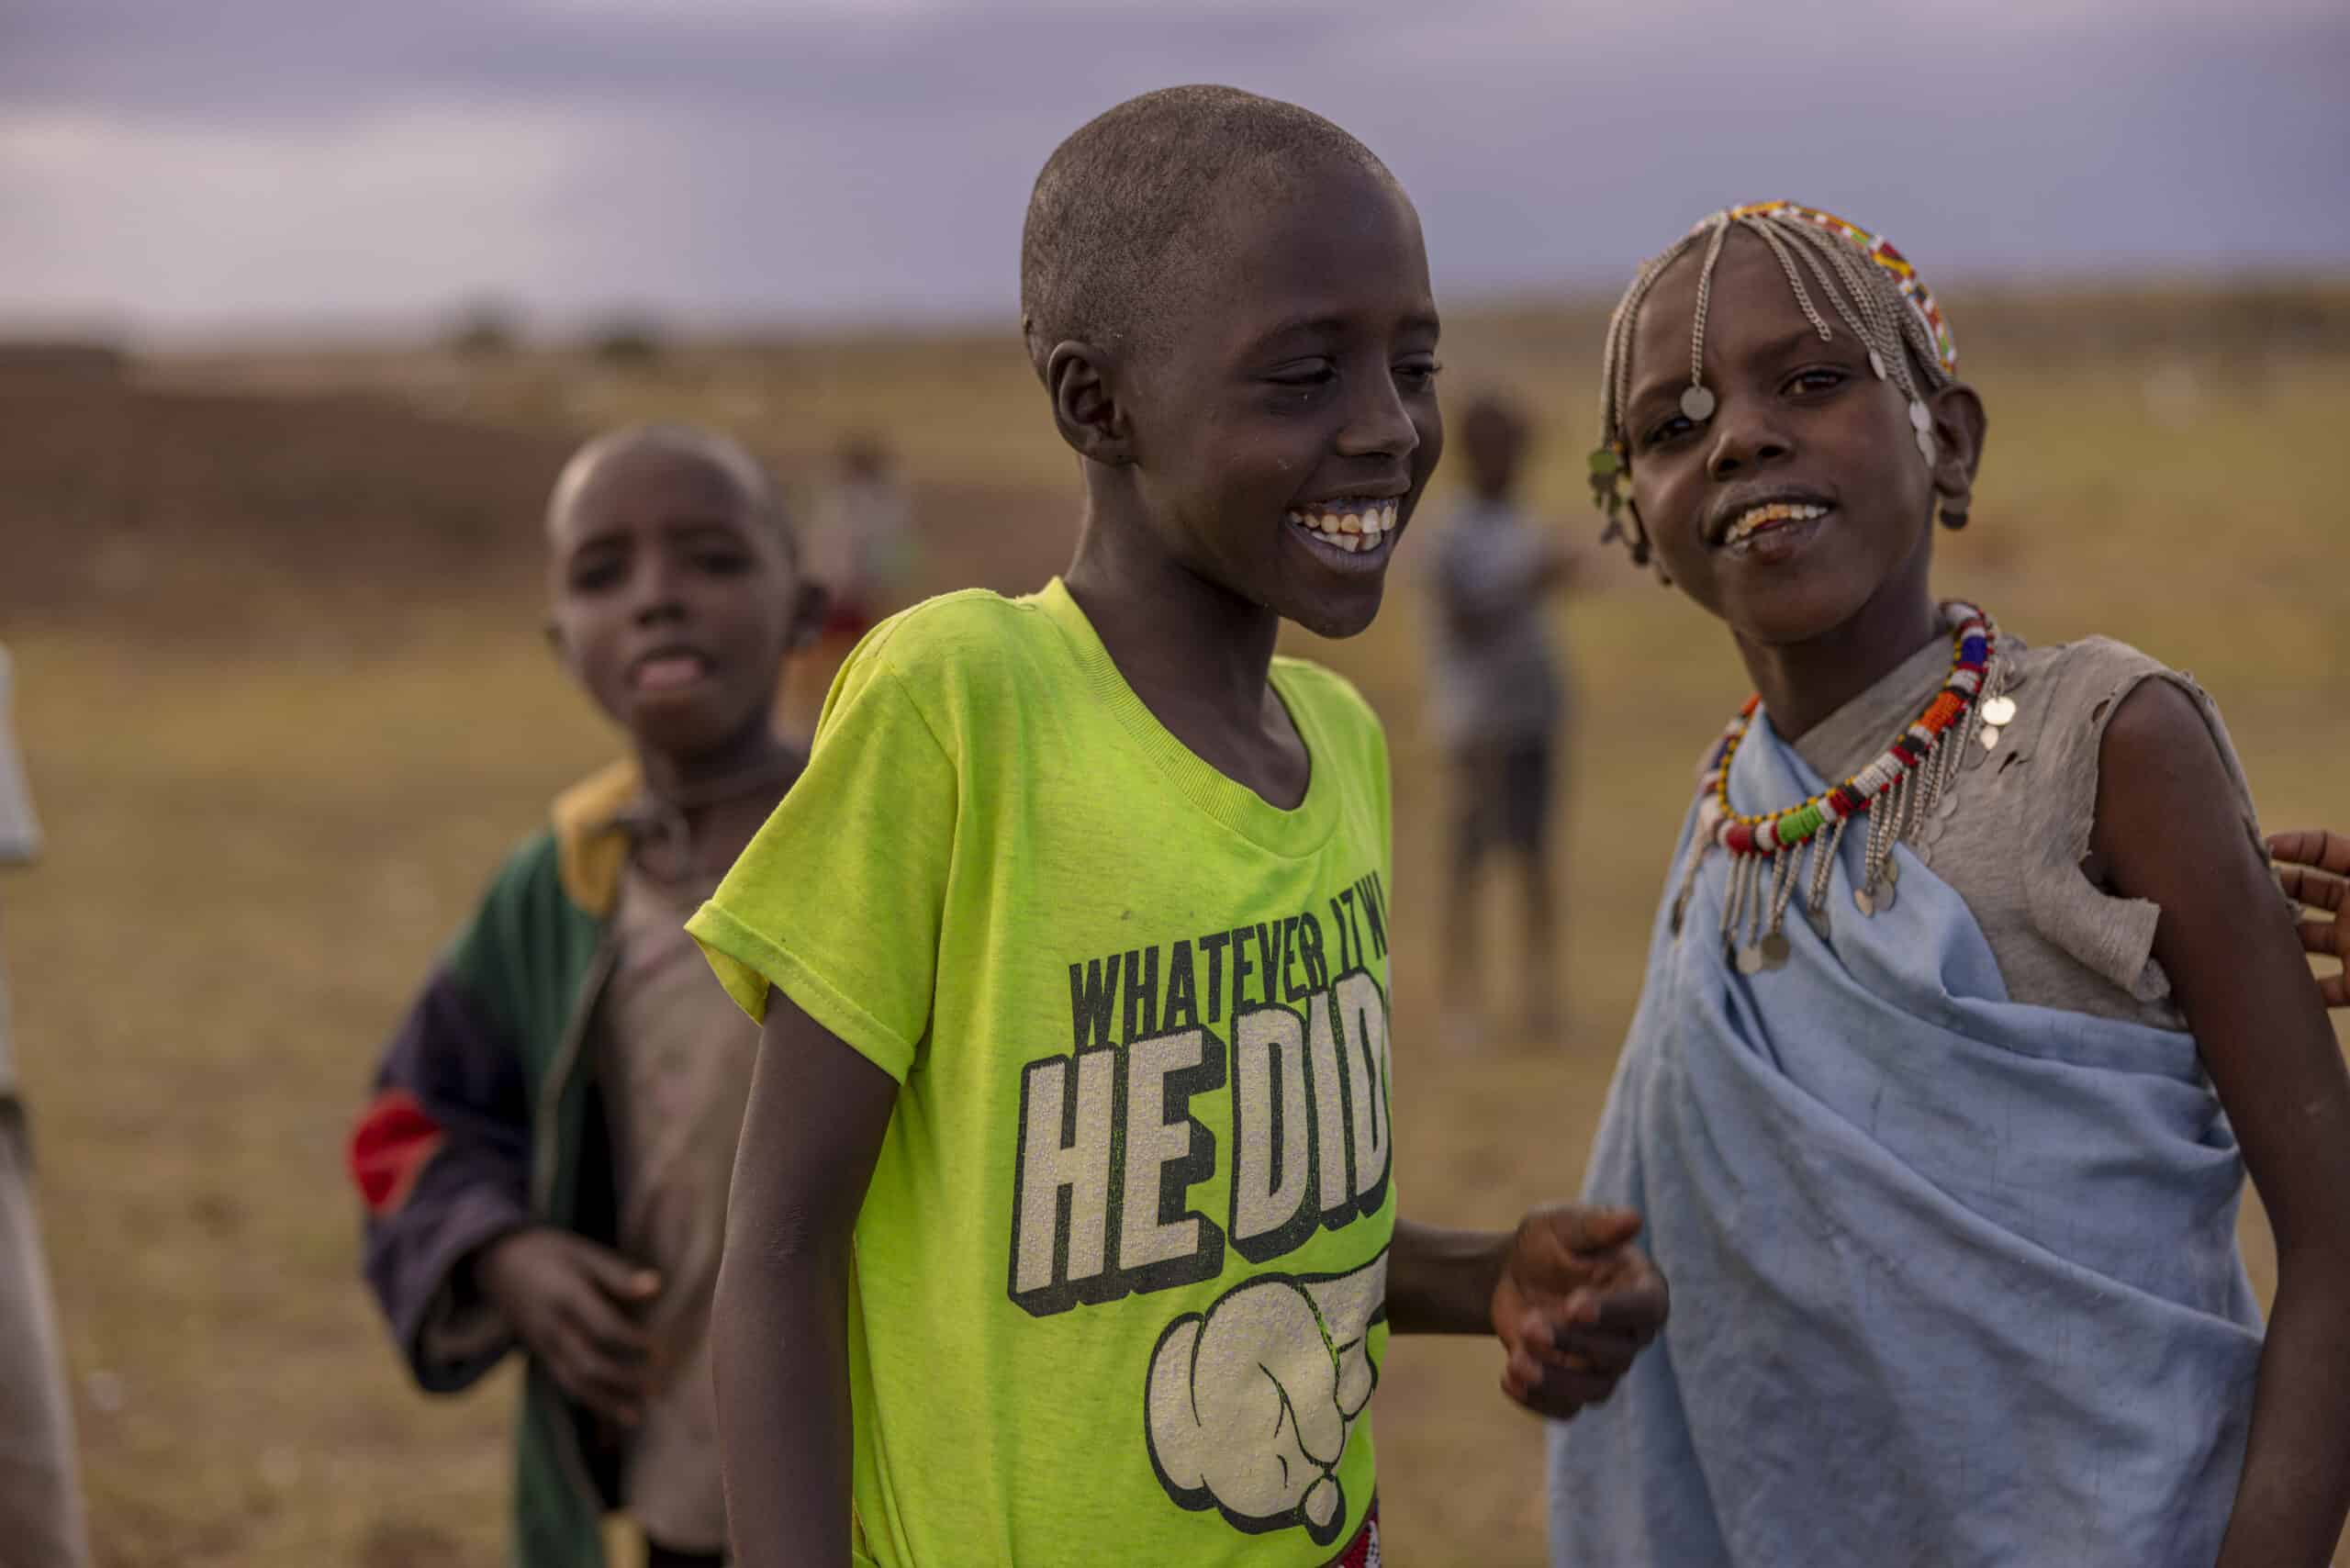 Drei afrikanische Kinder auf einem Feld in der Abenddämmerung; ein Mädchen mit einer Perlenkette und ein Junge in einem hellgrünen Hemd lachen zusammen, ein weiterer Junge ist im Hintergrund. © Fotografie Tomas Rodriguez